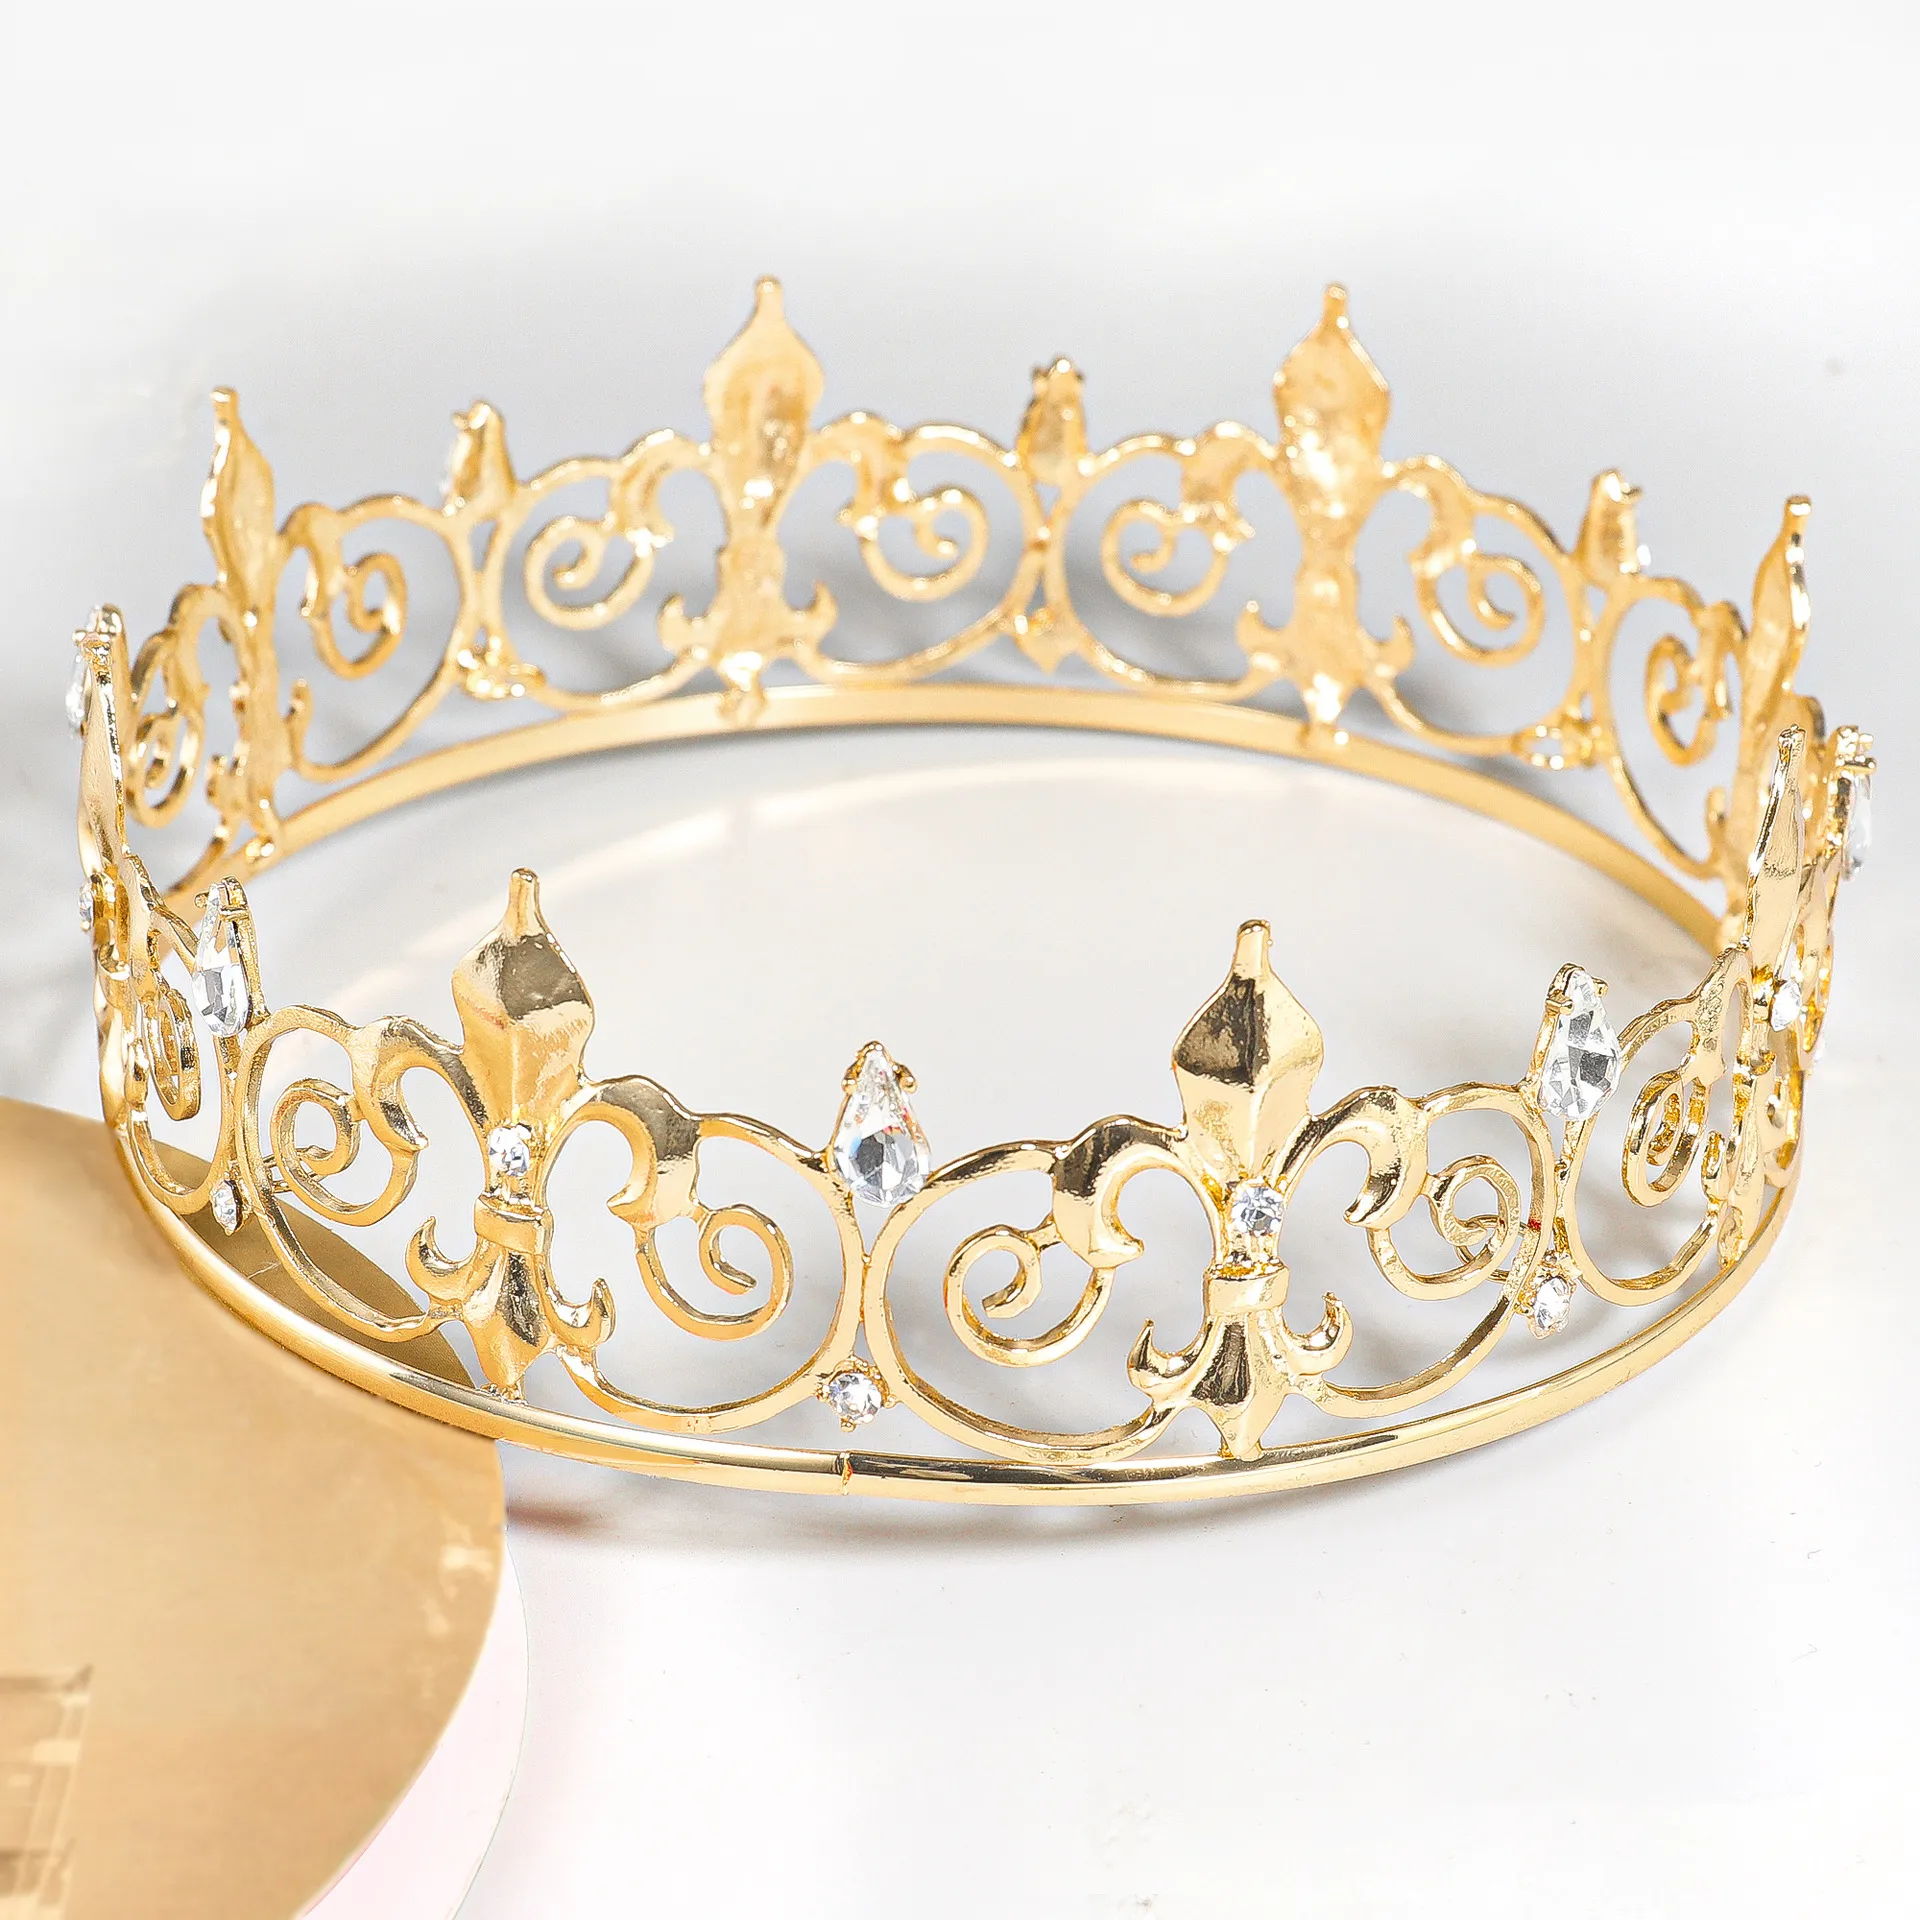 Kopfschmuck Gold Runde Krone König Königin Hochzeit Tiara Braut Kopfschmuck Party Kristall Haarschmuck